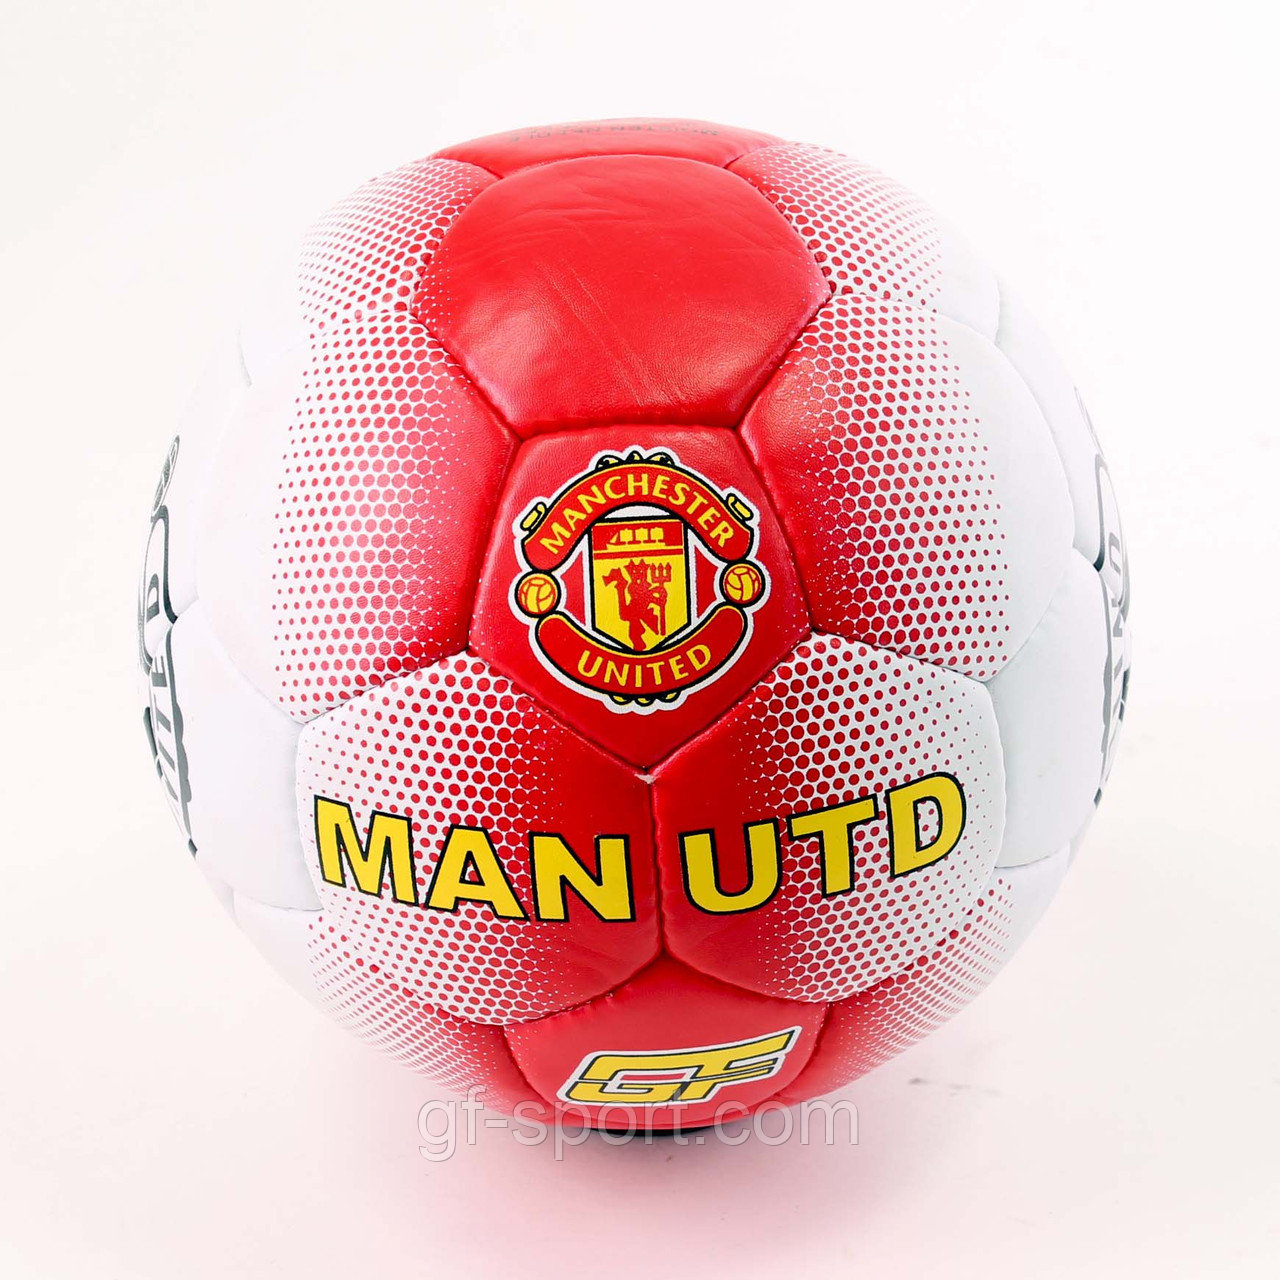 Мяч футбольный MANCHESTER UNITED (Манчестер Юнайтед) 2511